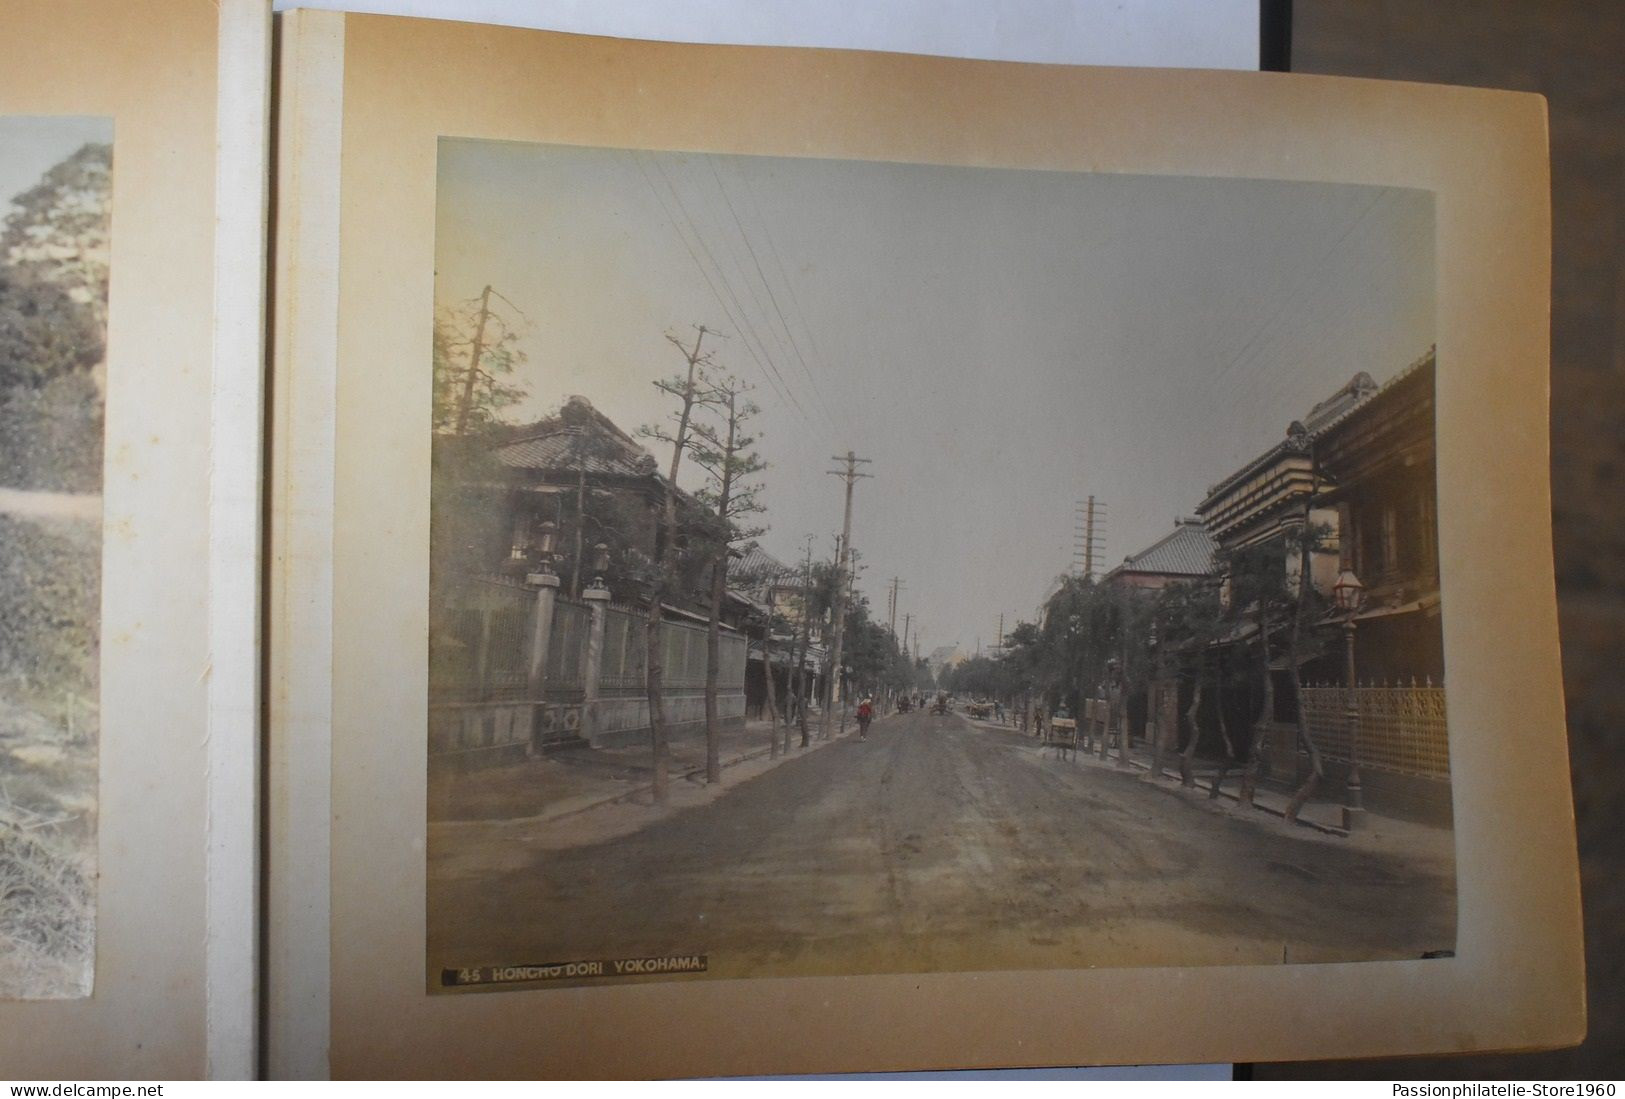 Album de 50 photos 27/36 cm japonais Japan Japon vers1870 1890